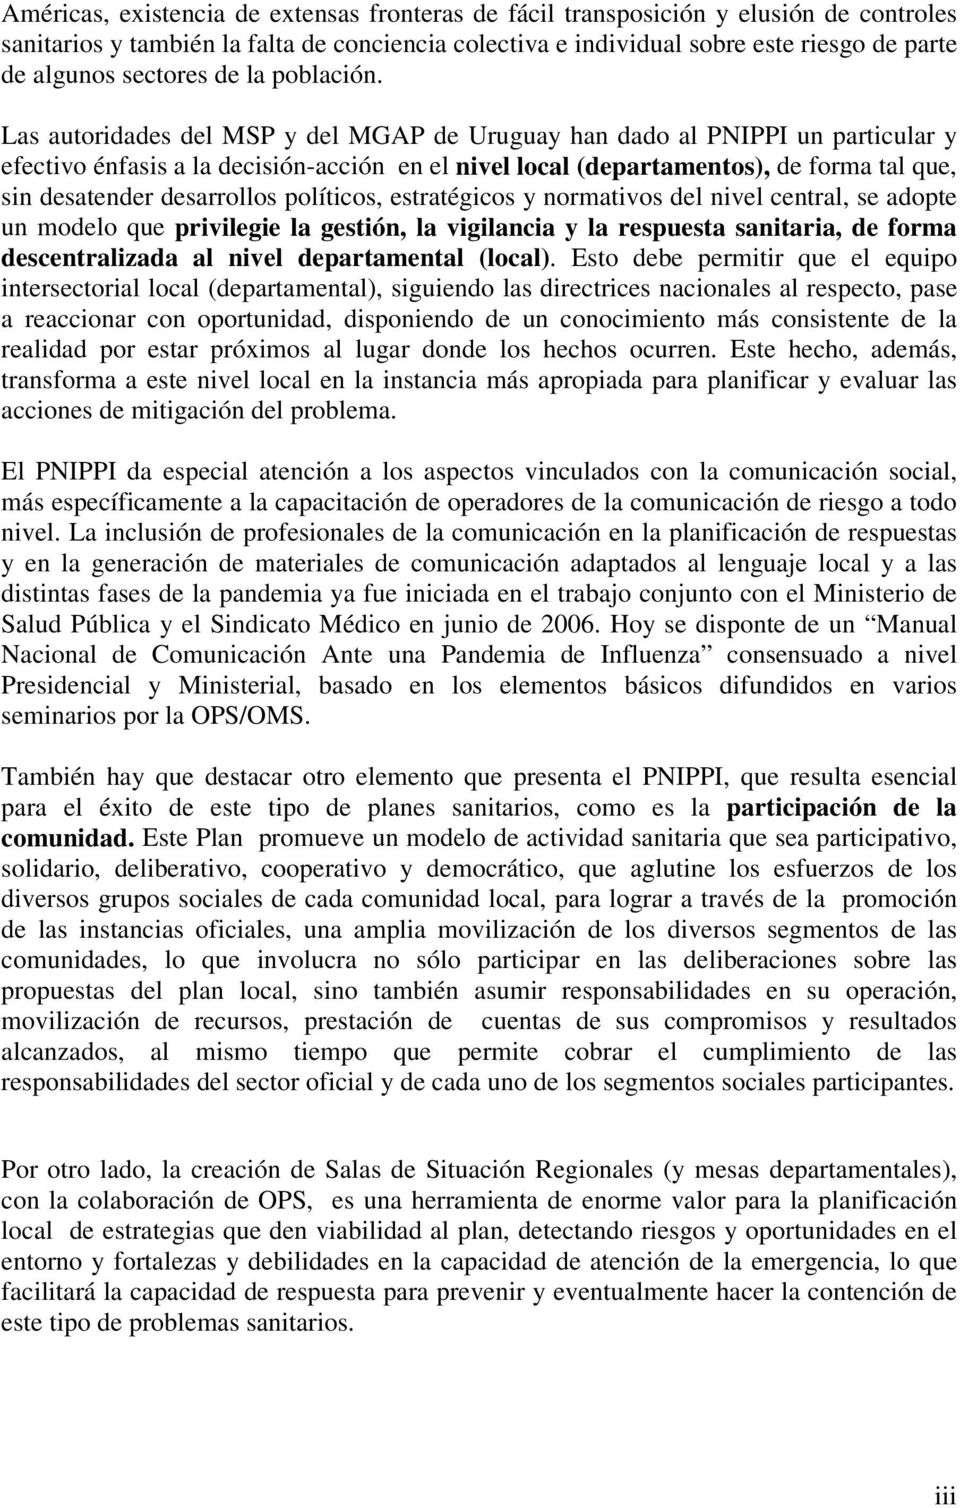 Las autoridades del MSP y del MGAP de Uruguay han dado al PNIPPI un particular y efectivo énfasis a la decisión-acción en el nivel local (departamentos), de forma tal que, sin desatender desarrollos